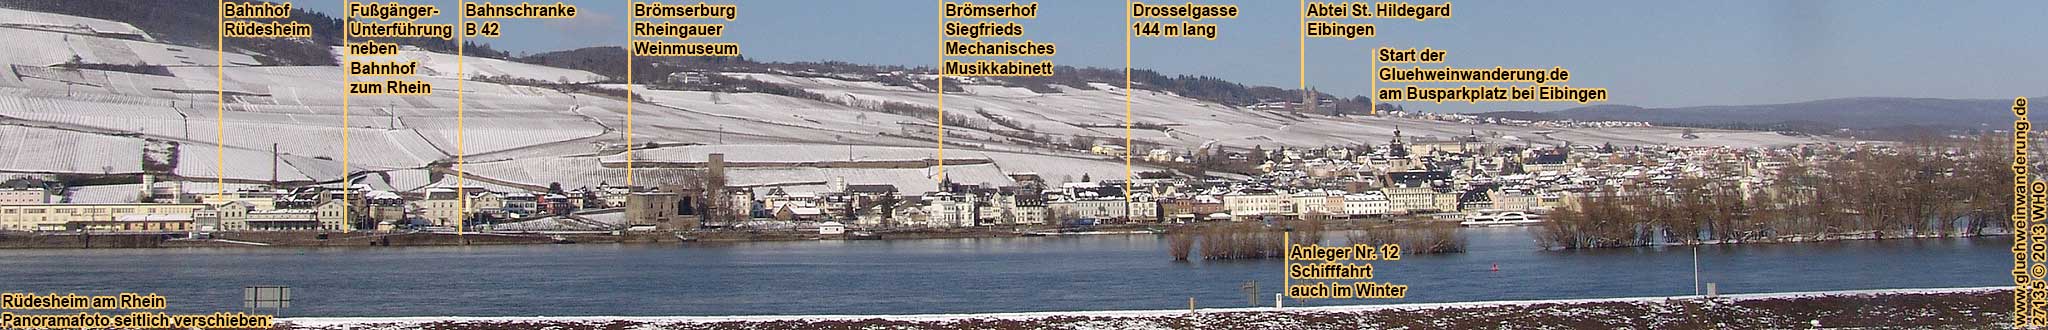 Rüdesheim am Rhein im Winter. Panoramafoto mit Schiffsanlegern.